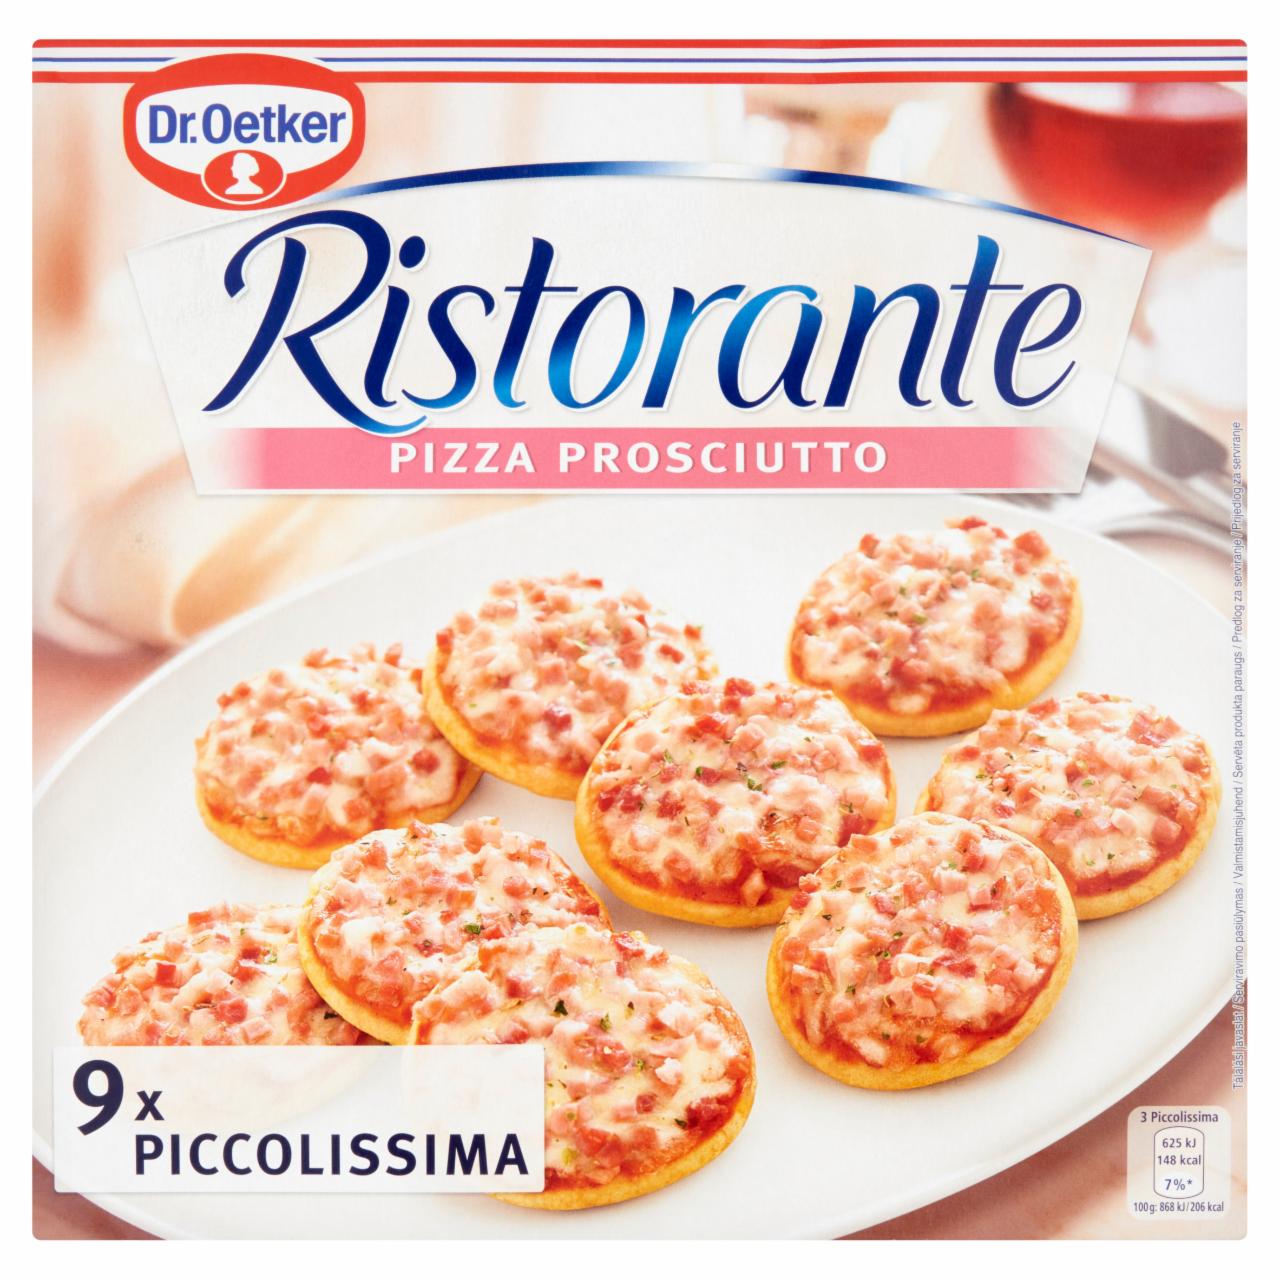 Képek - Dr. Oetker Ristorante Pizza Prosciutto gyorsfagyasztott mini pizza 216 g